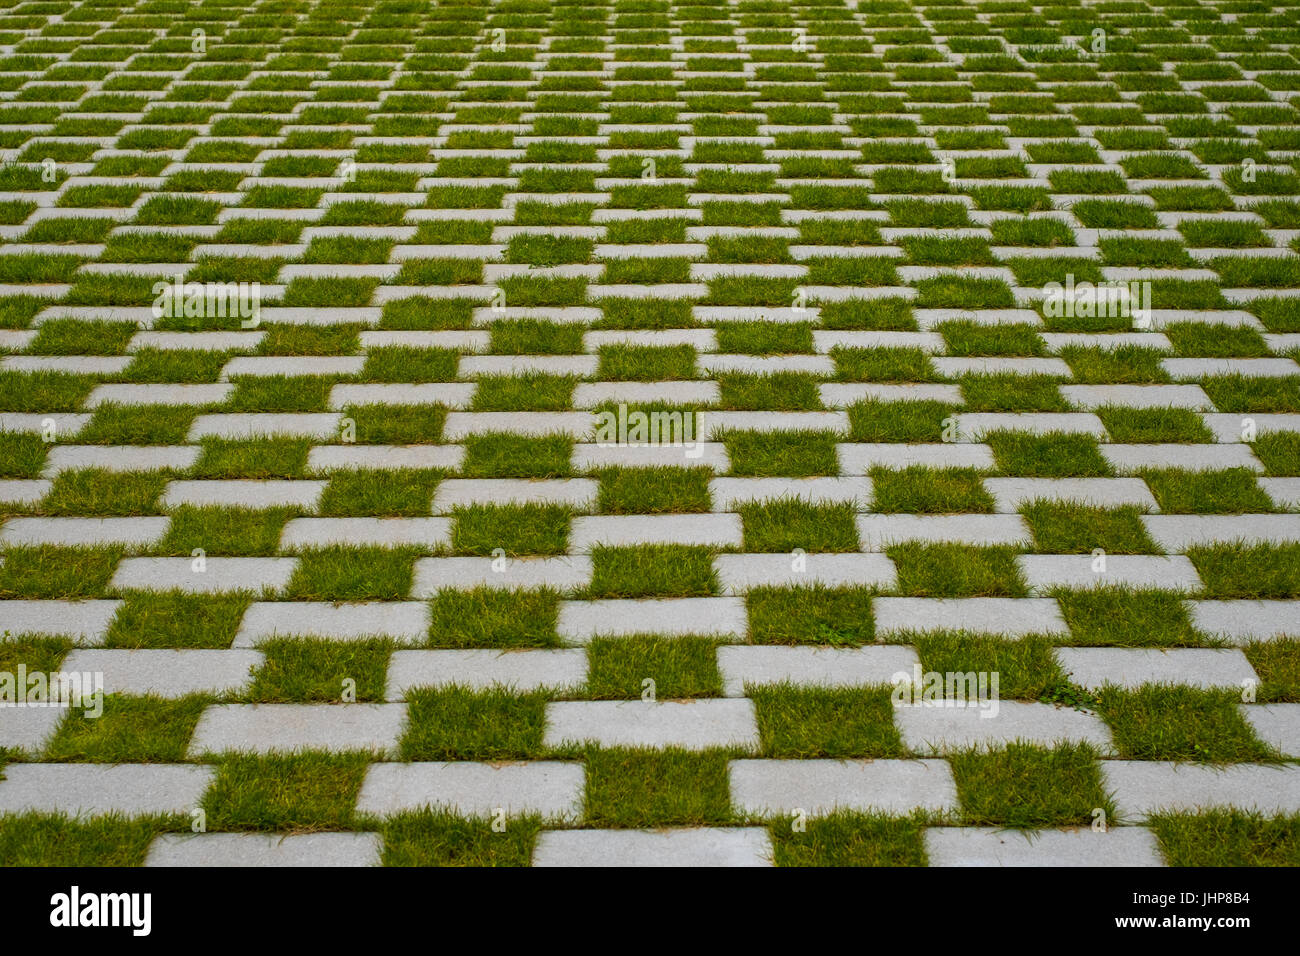 Gras- und gepflasterten Gehweg - karierten Boden Stockfoto